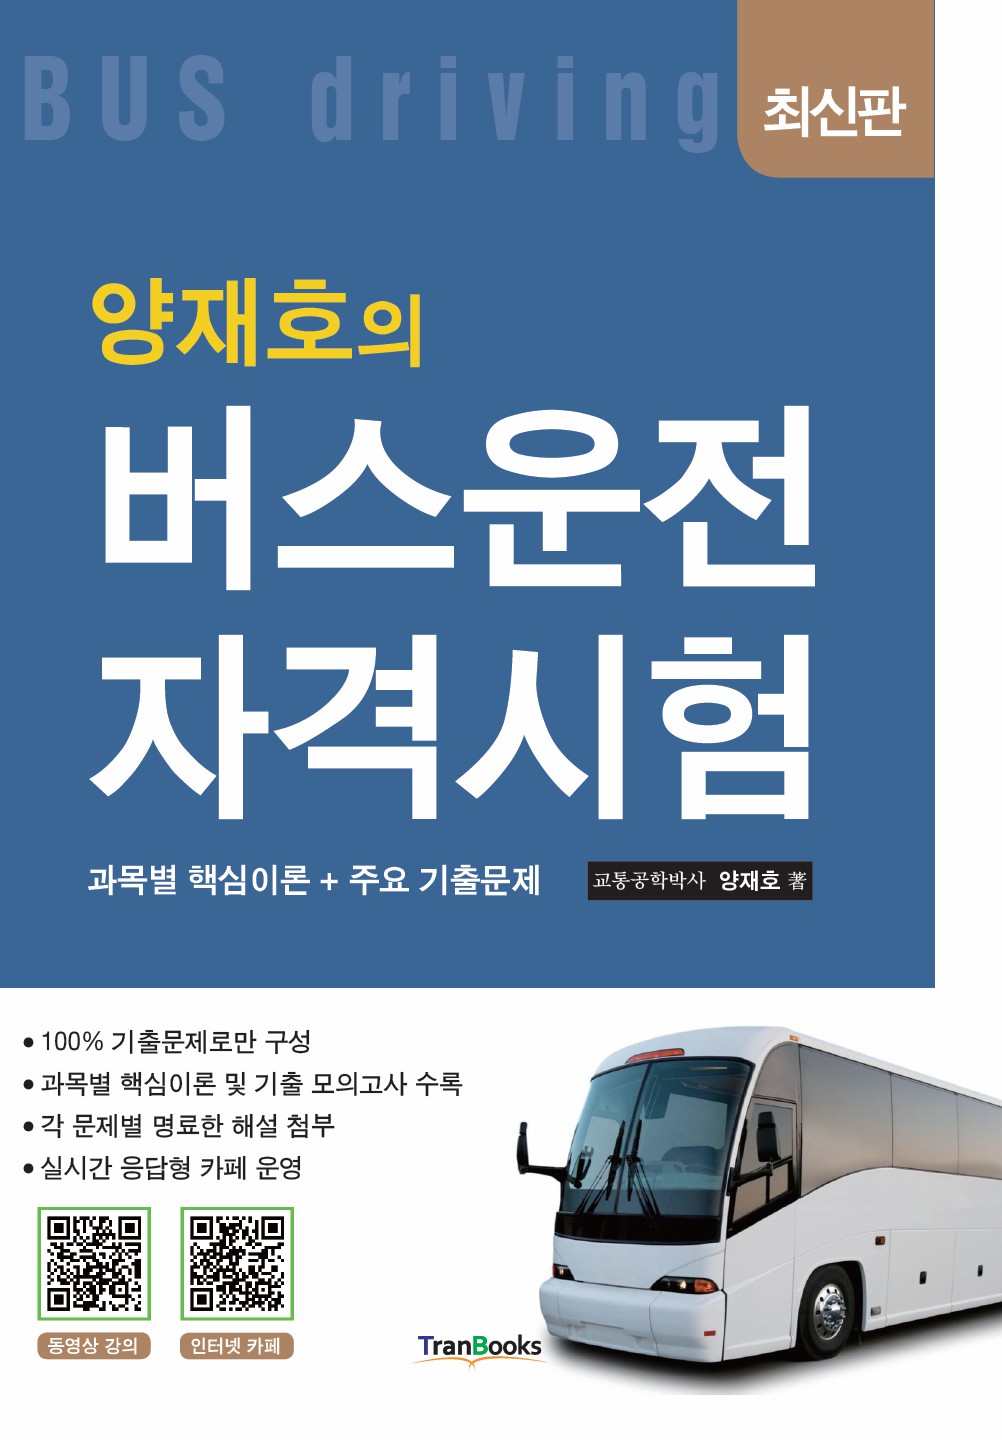 [버스] 관련법규 및 교통사고유형